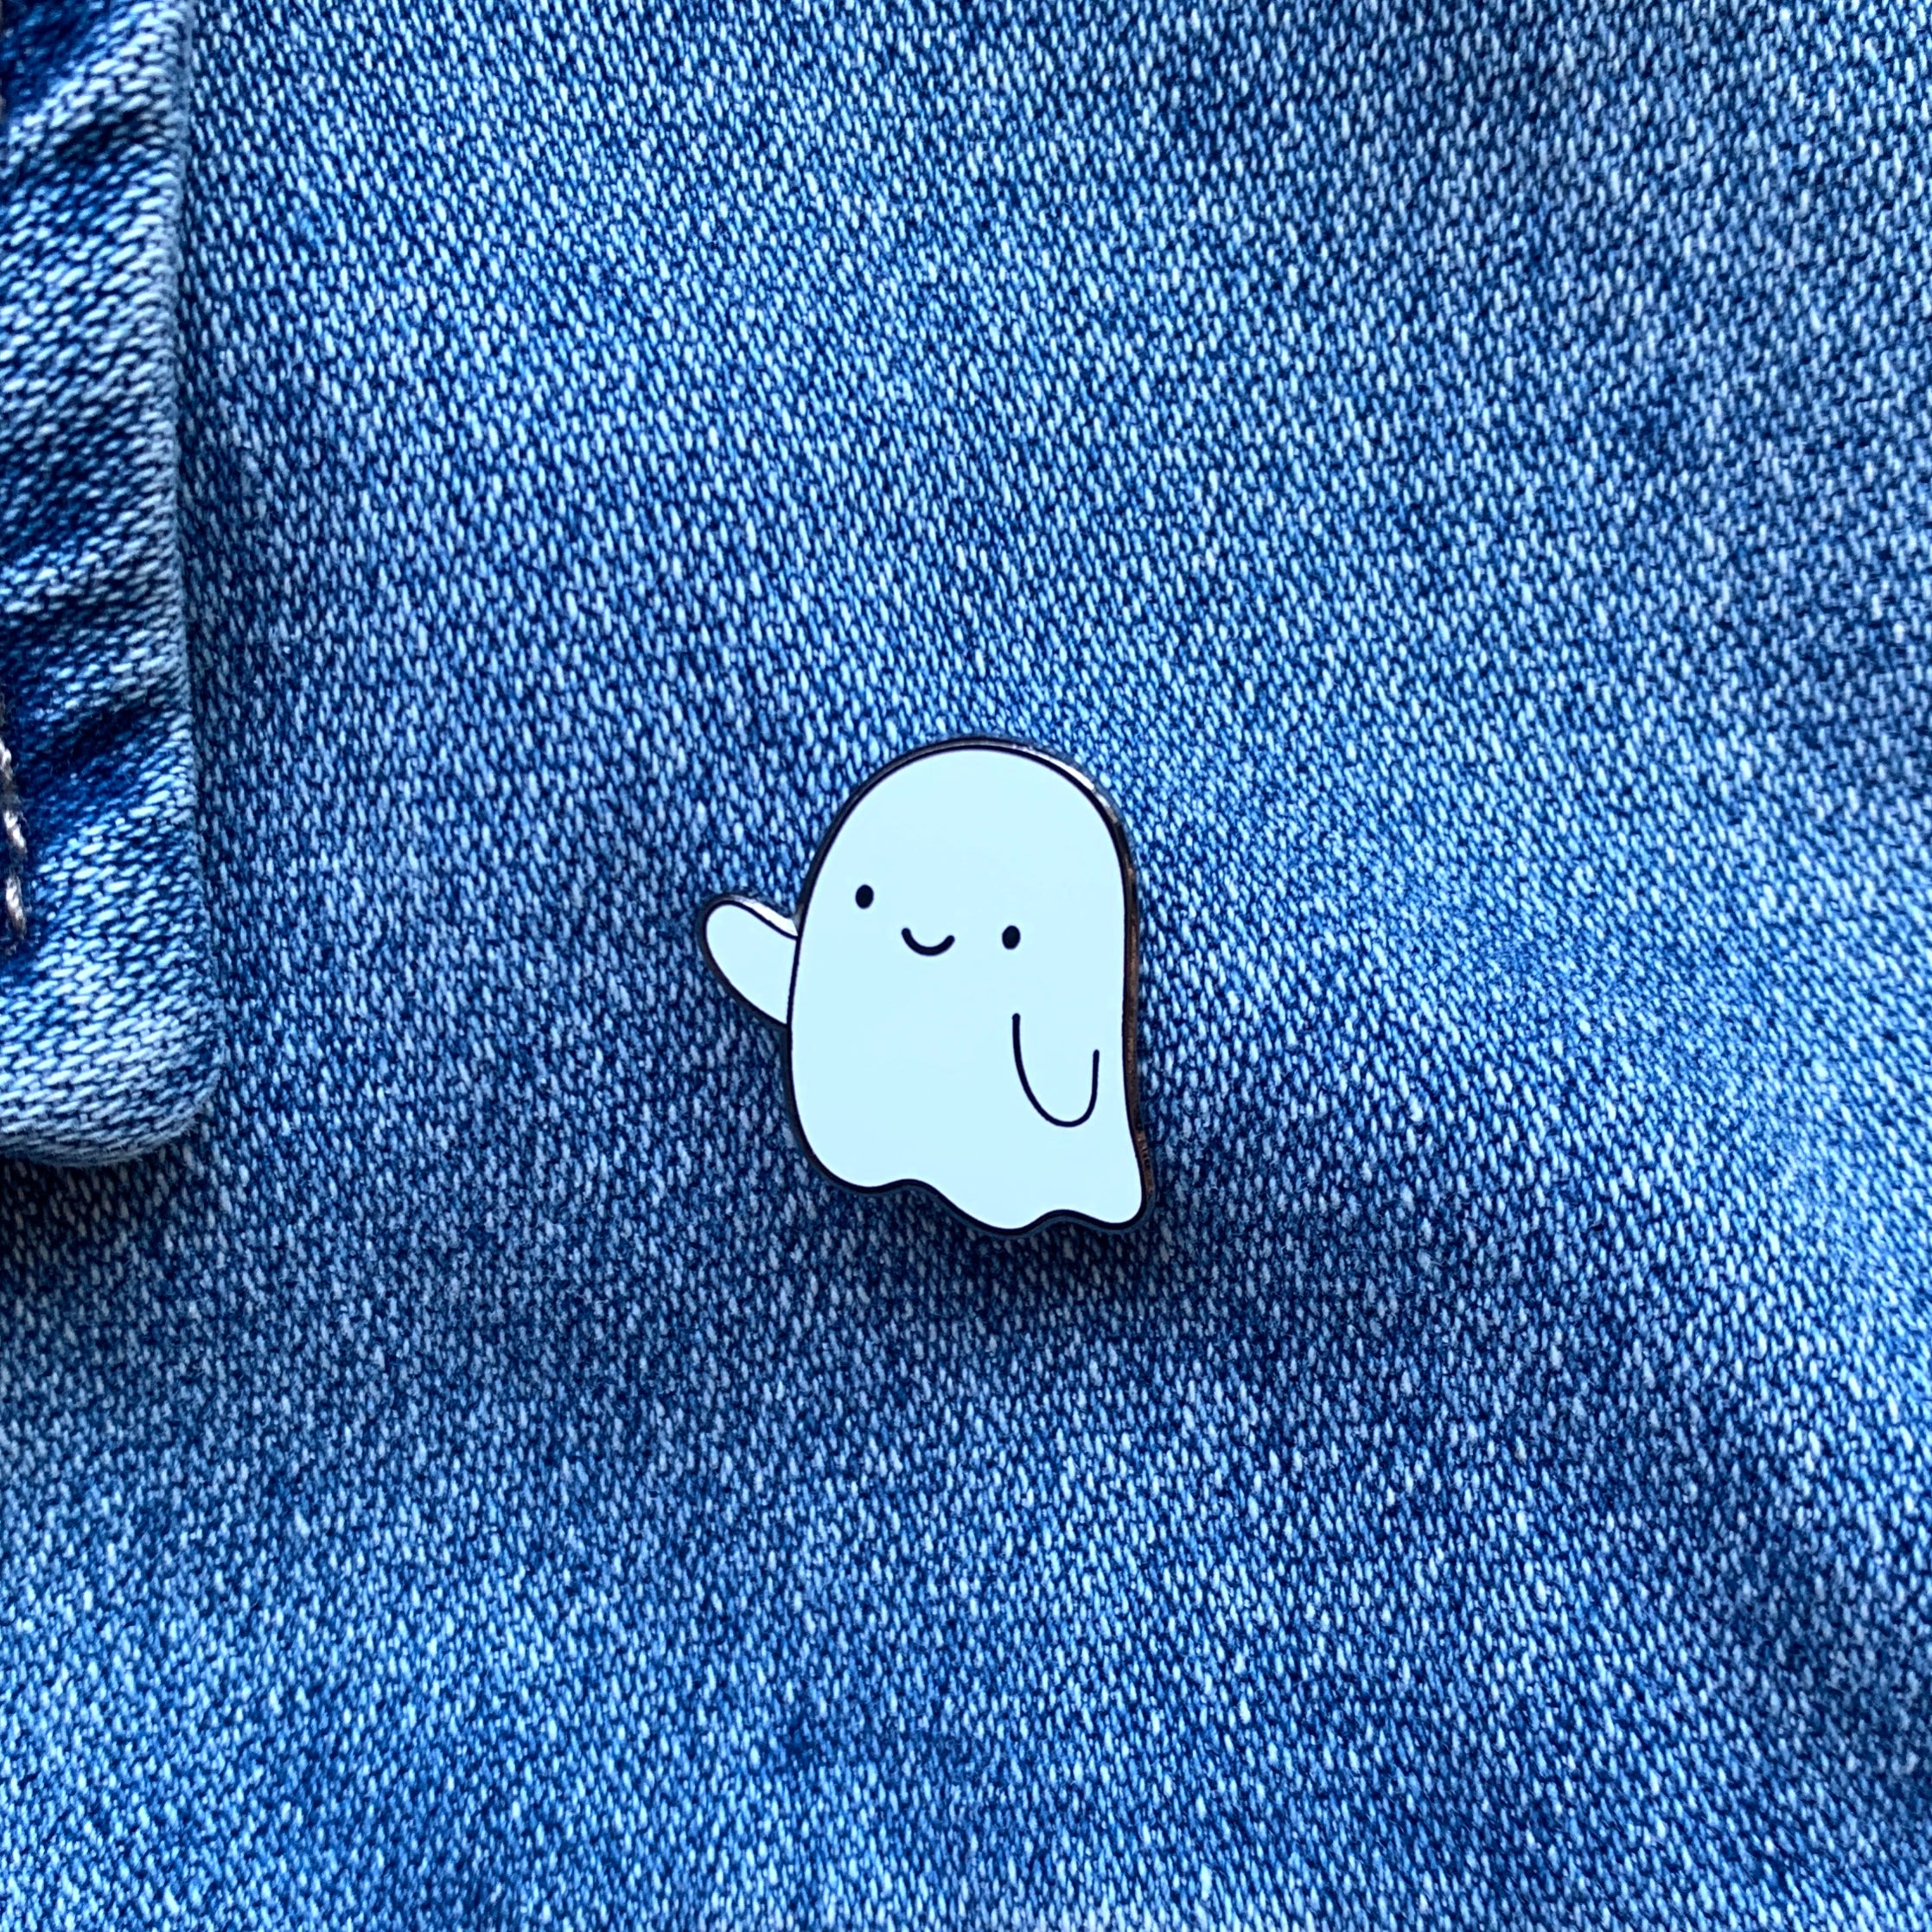 Ghost Enamel Pin